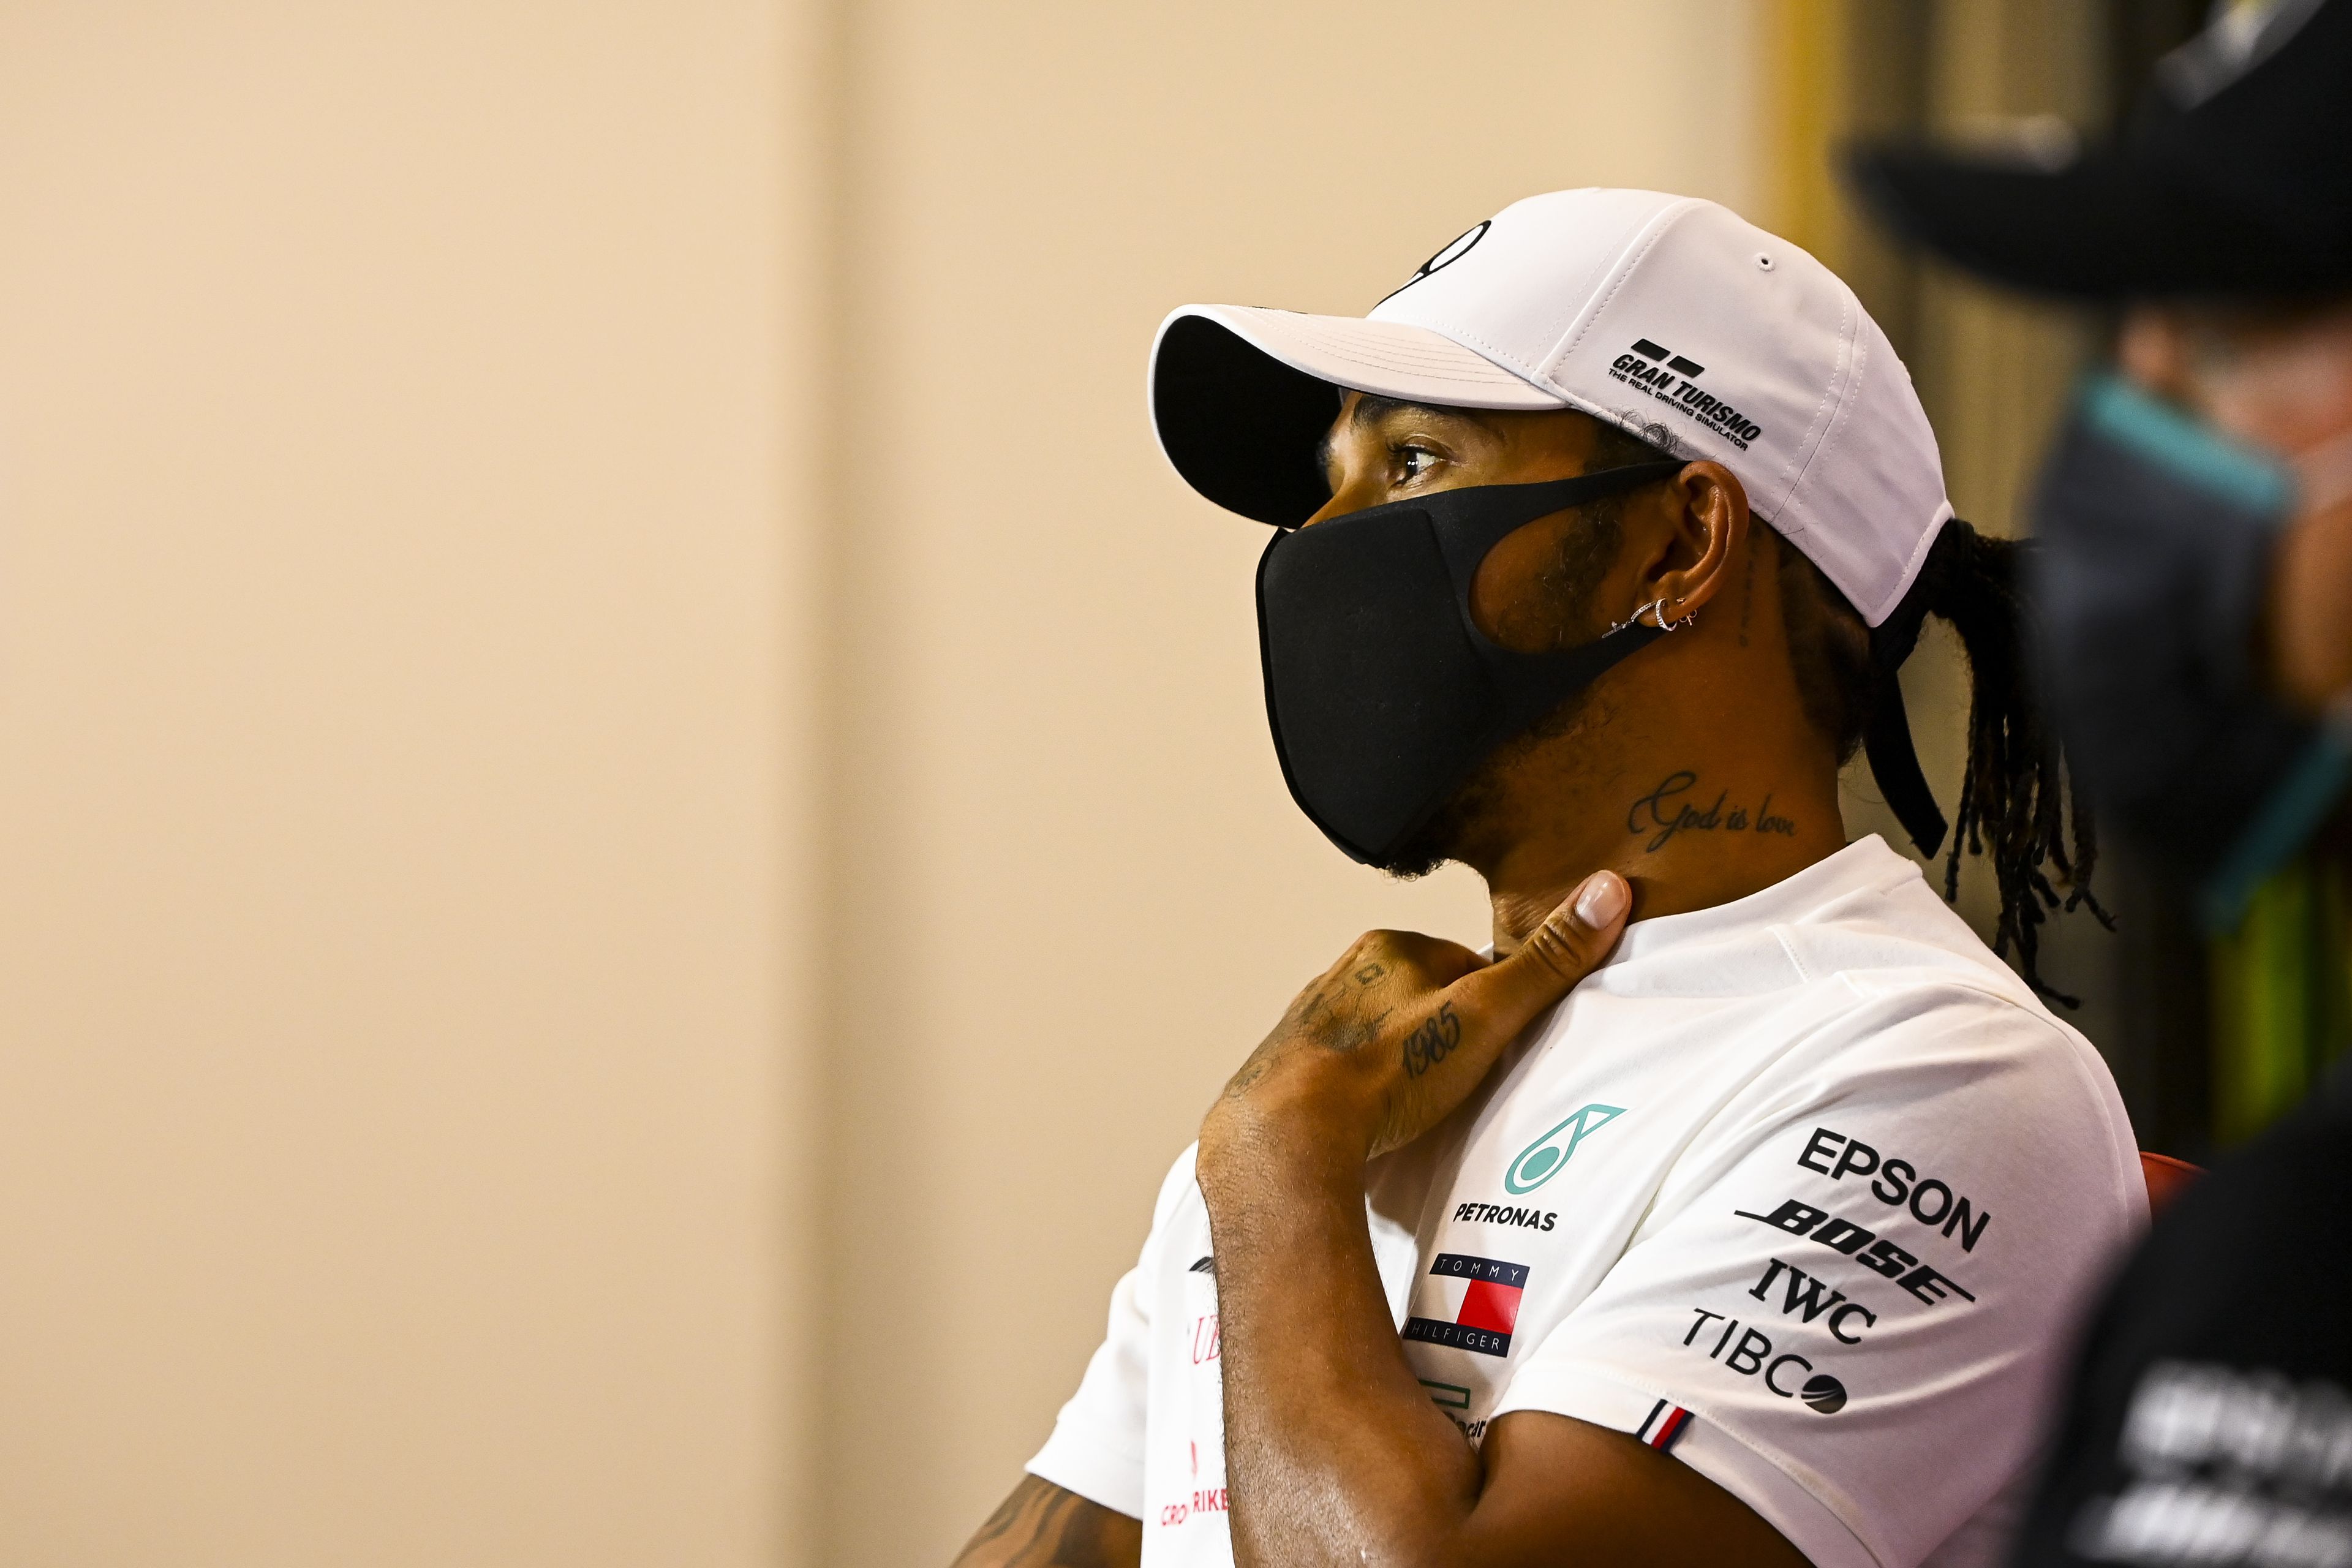 Schumiról beszélt Lewis Hamilton: várta, hogy egymás ellen versenyezzenek./ Fotó: Northfoto